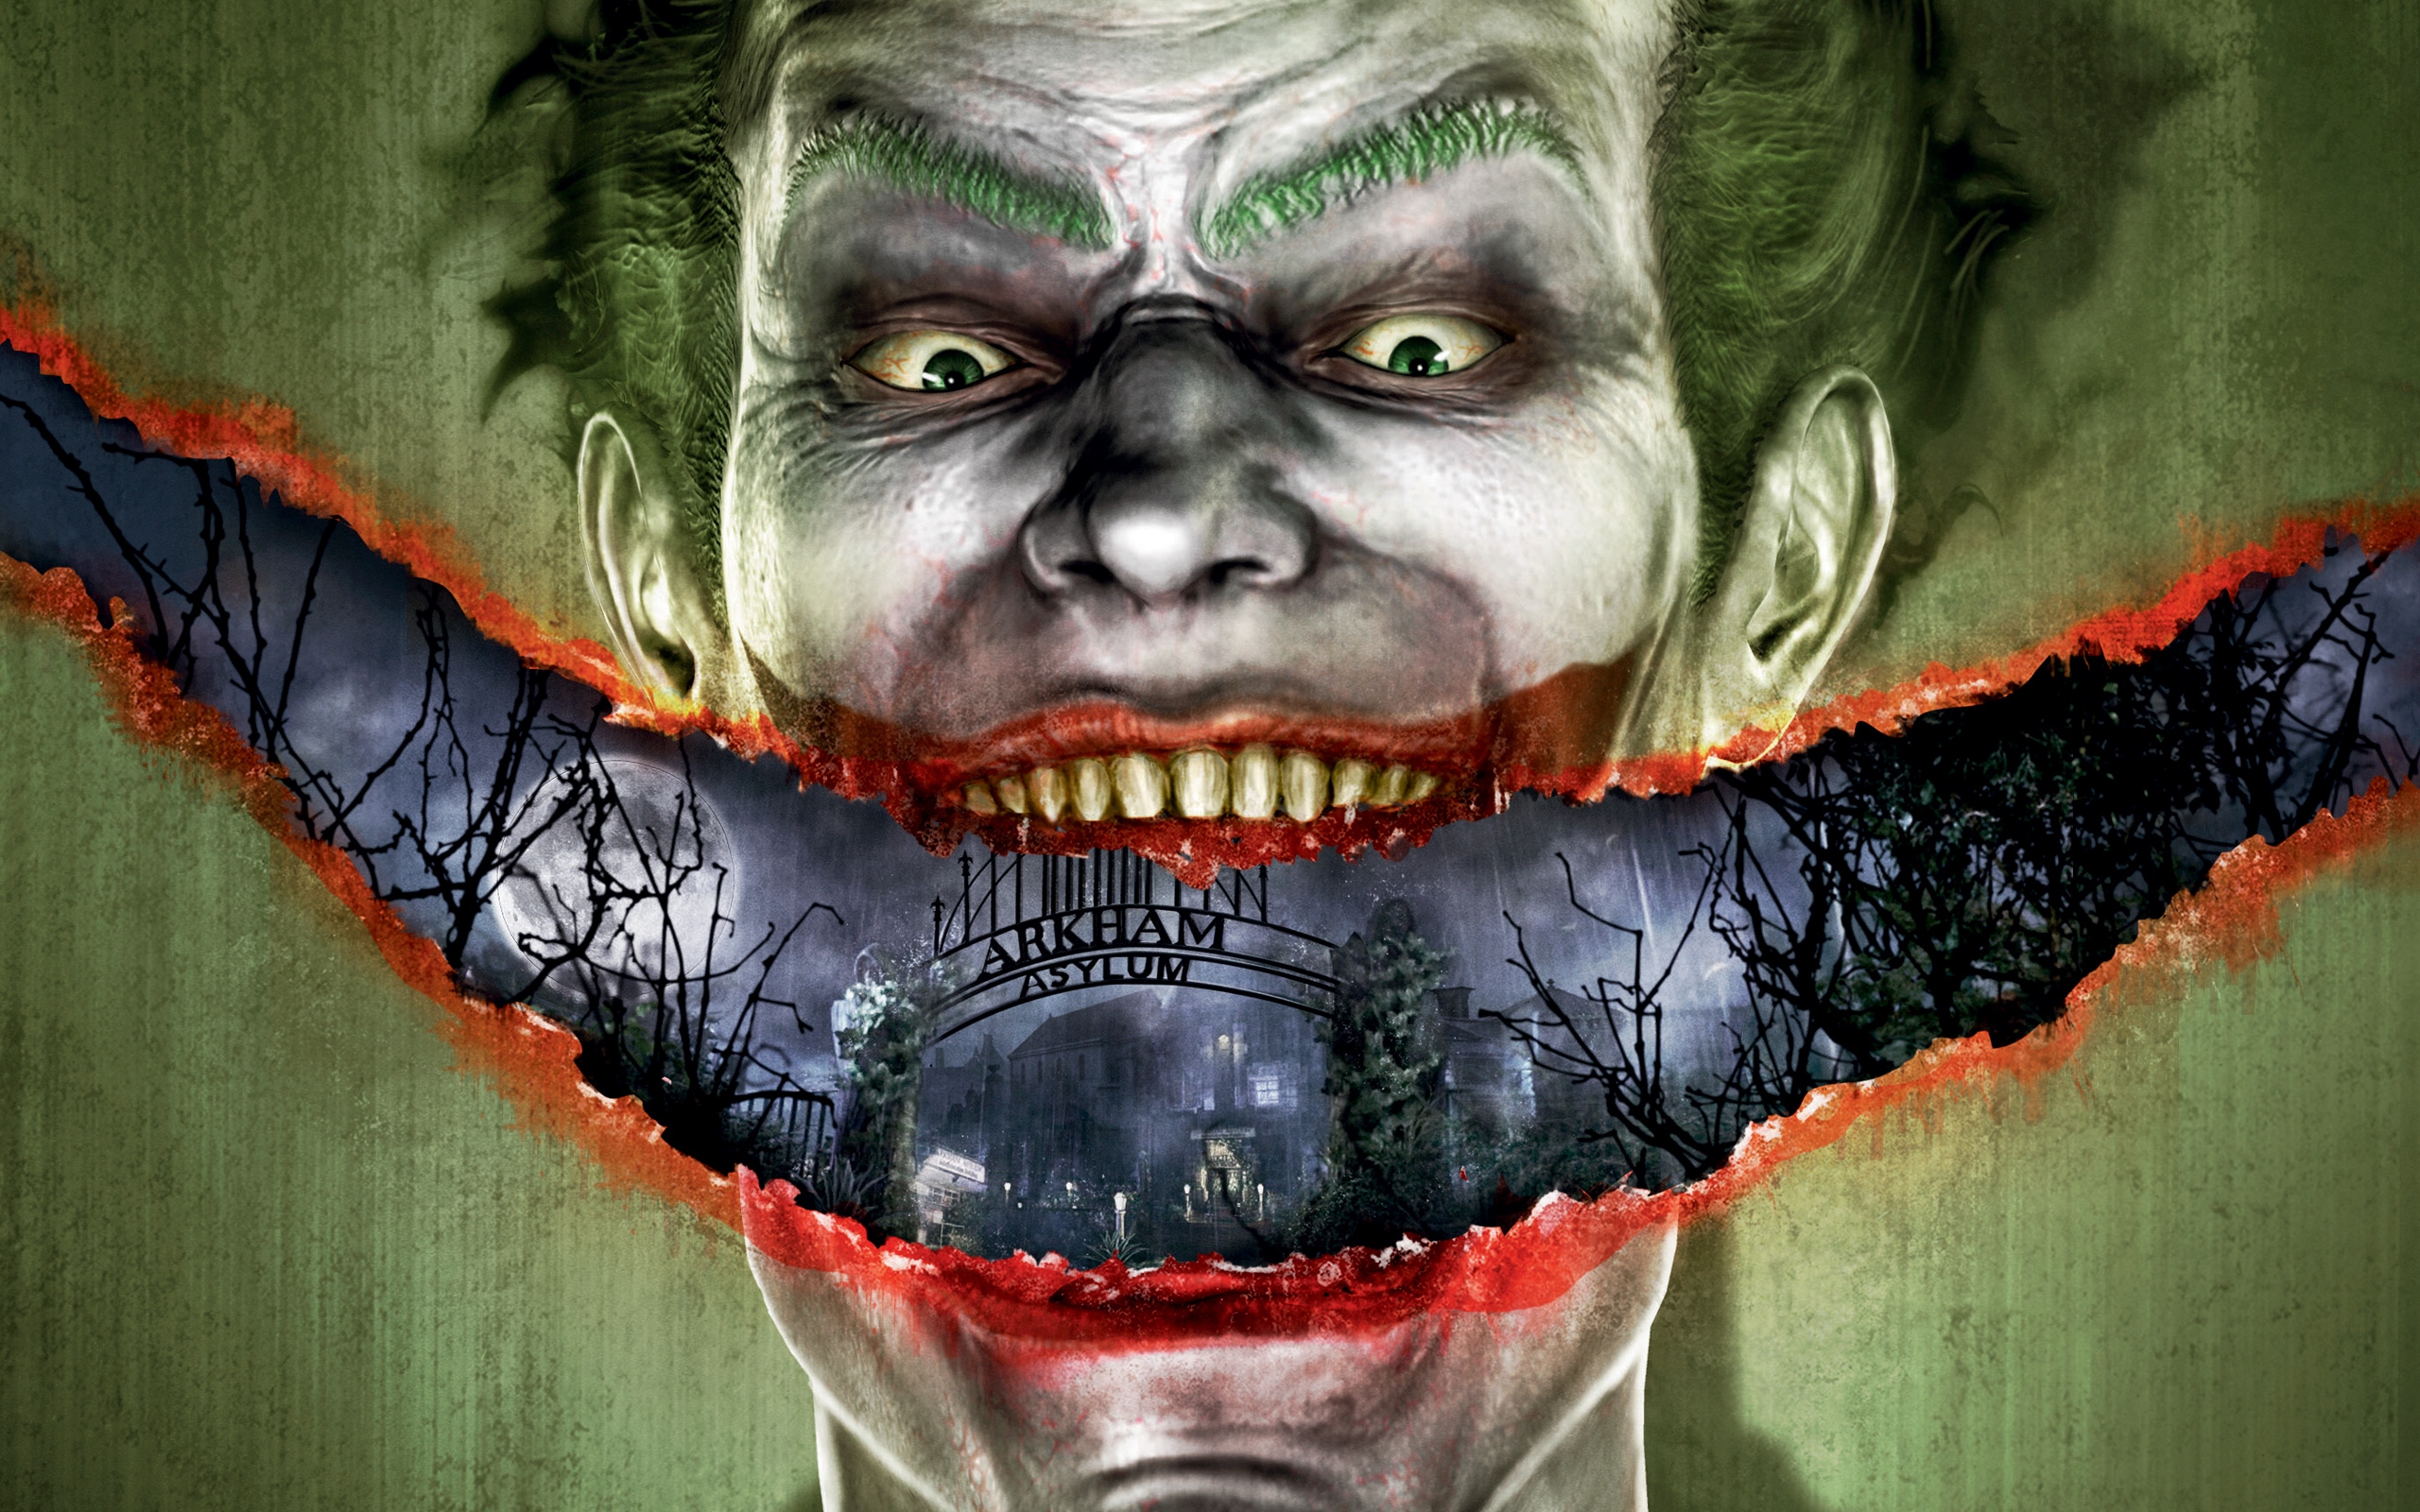 Batman Arkham City Joker 2560x1600